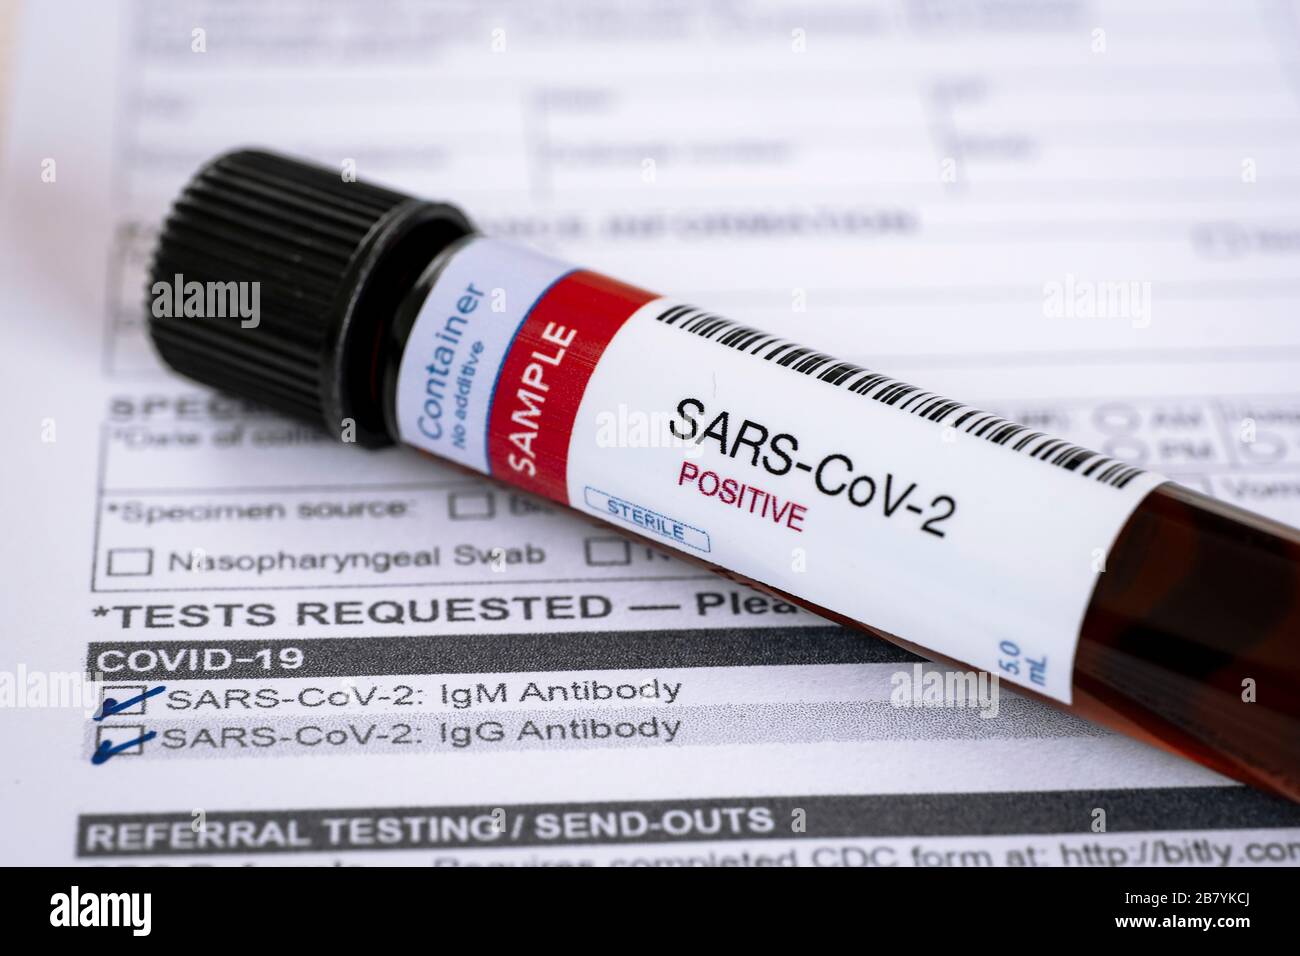 Prüfung auf Vorhandensein von Coronavirus. Röhrchen mit einer Blutprobe, die positiv auf COVID-19 getestet wurde. Testformular im Hintergrund. Stockfoto